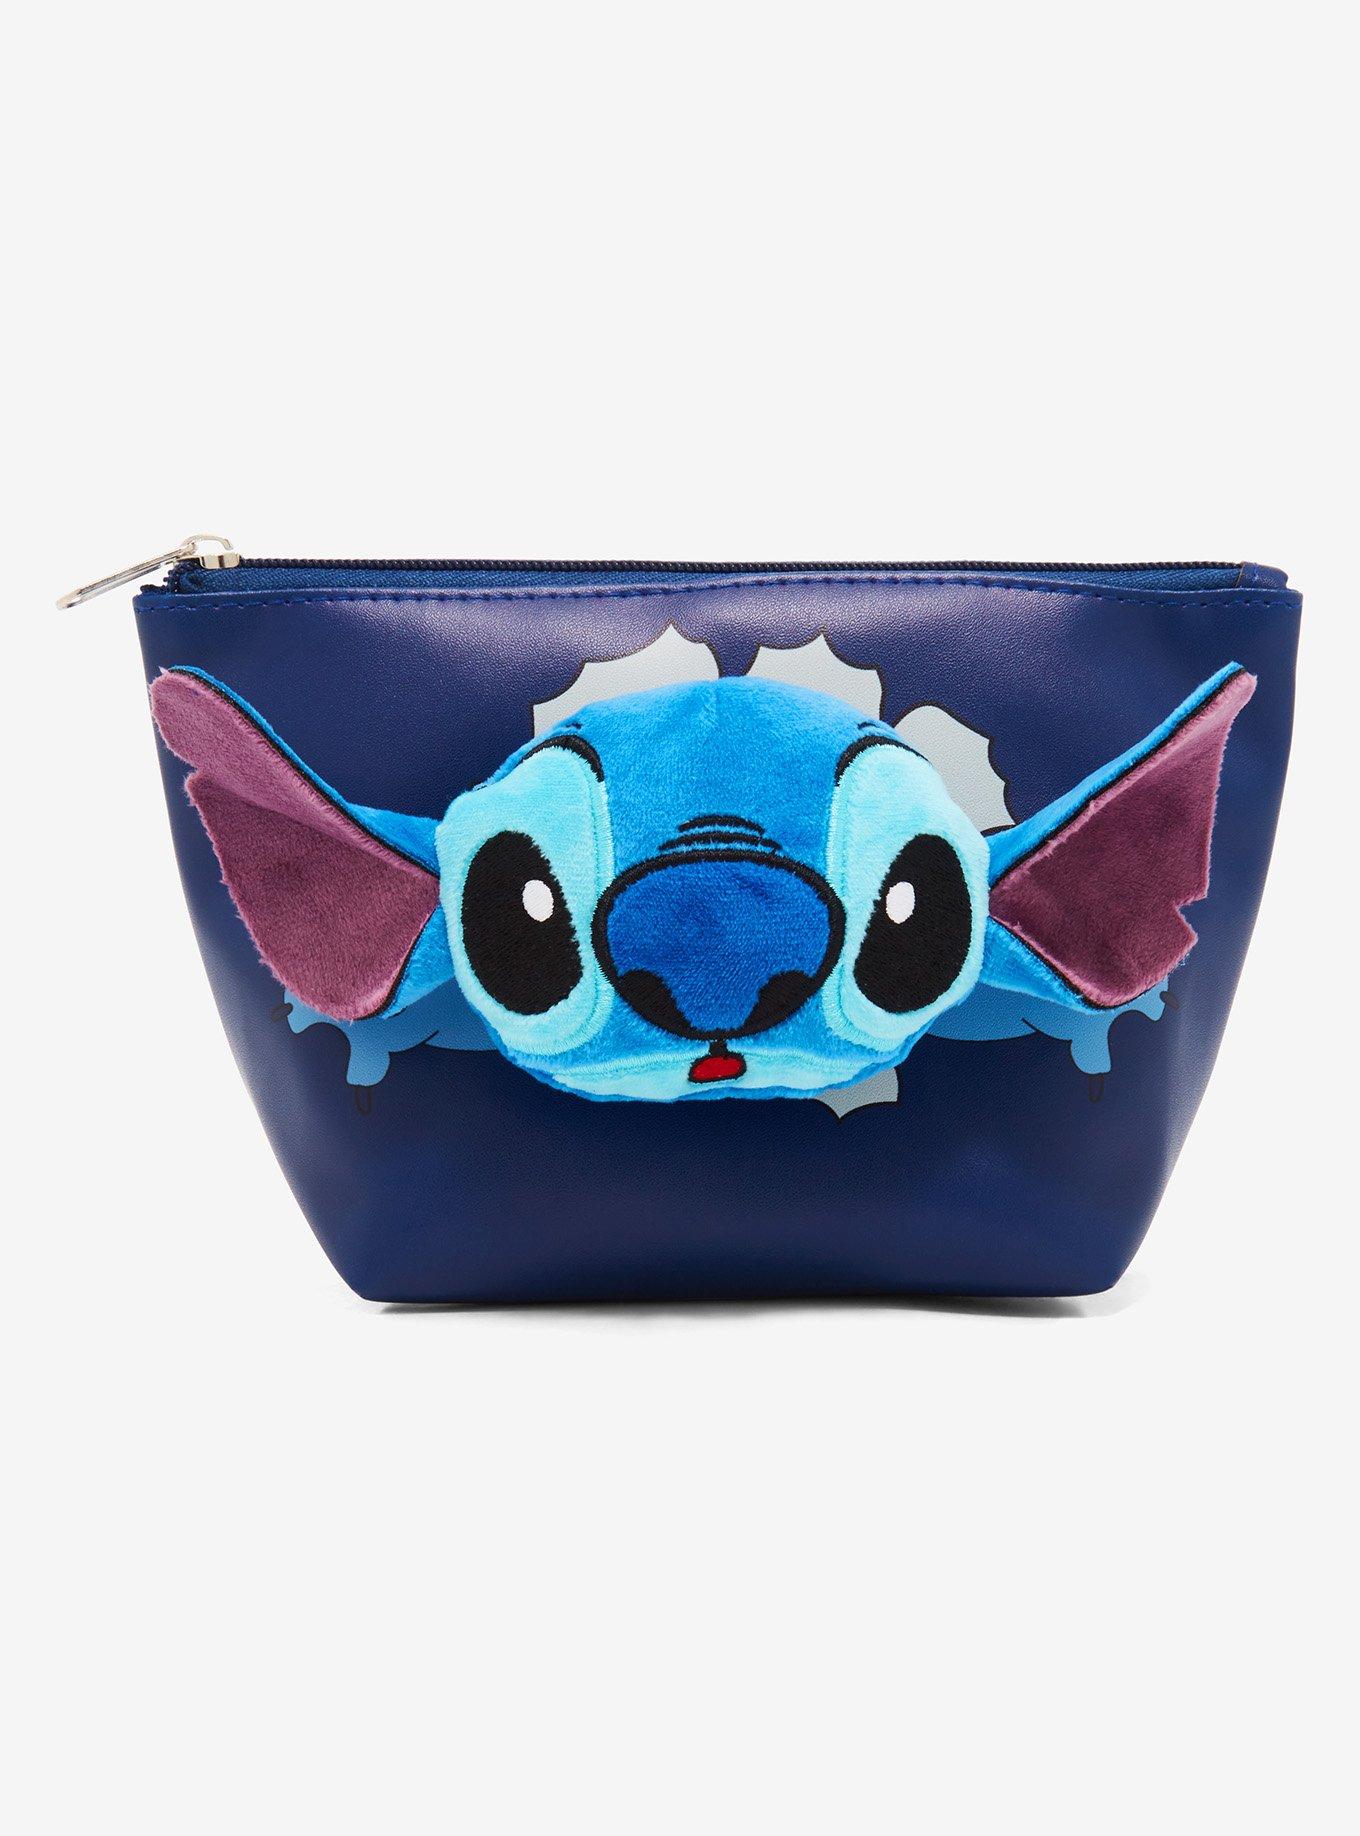 Disney Lilo & Stitch Trinket Tray - BoxLunch Exclusive